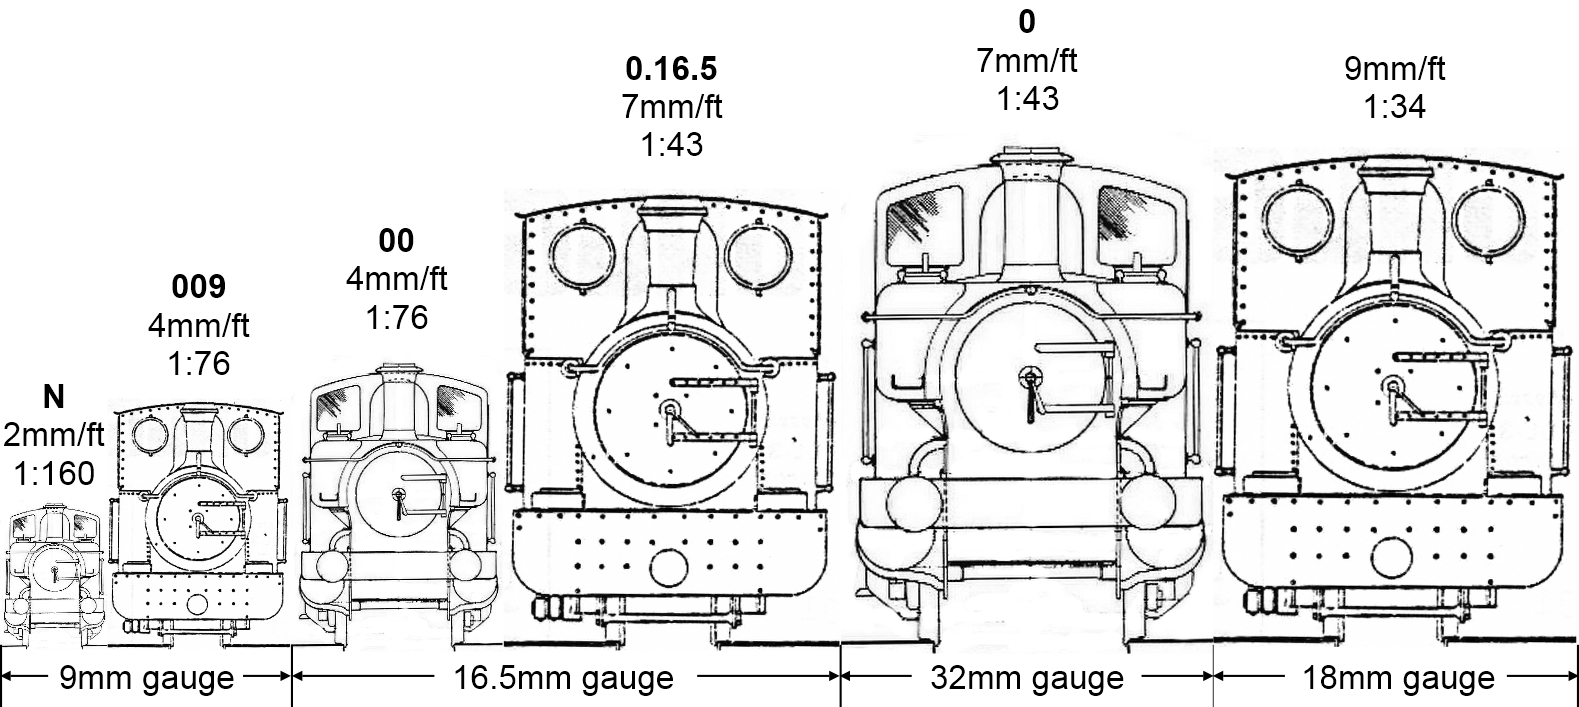 model railway gauges